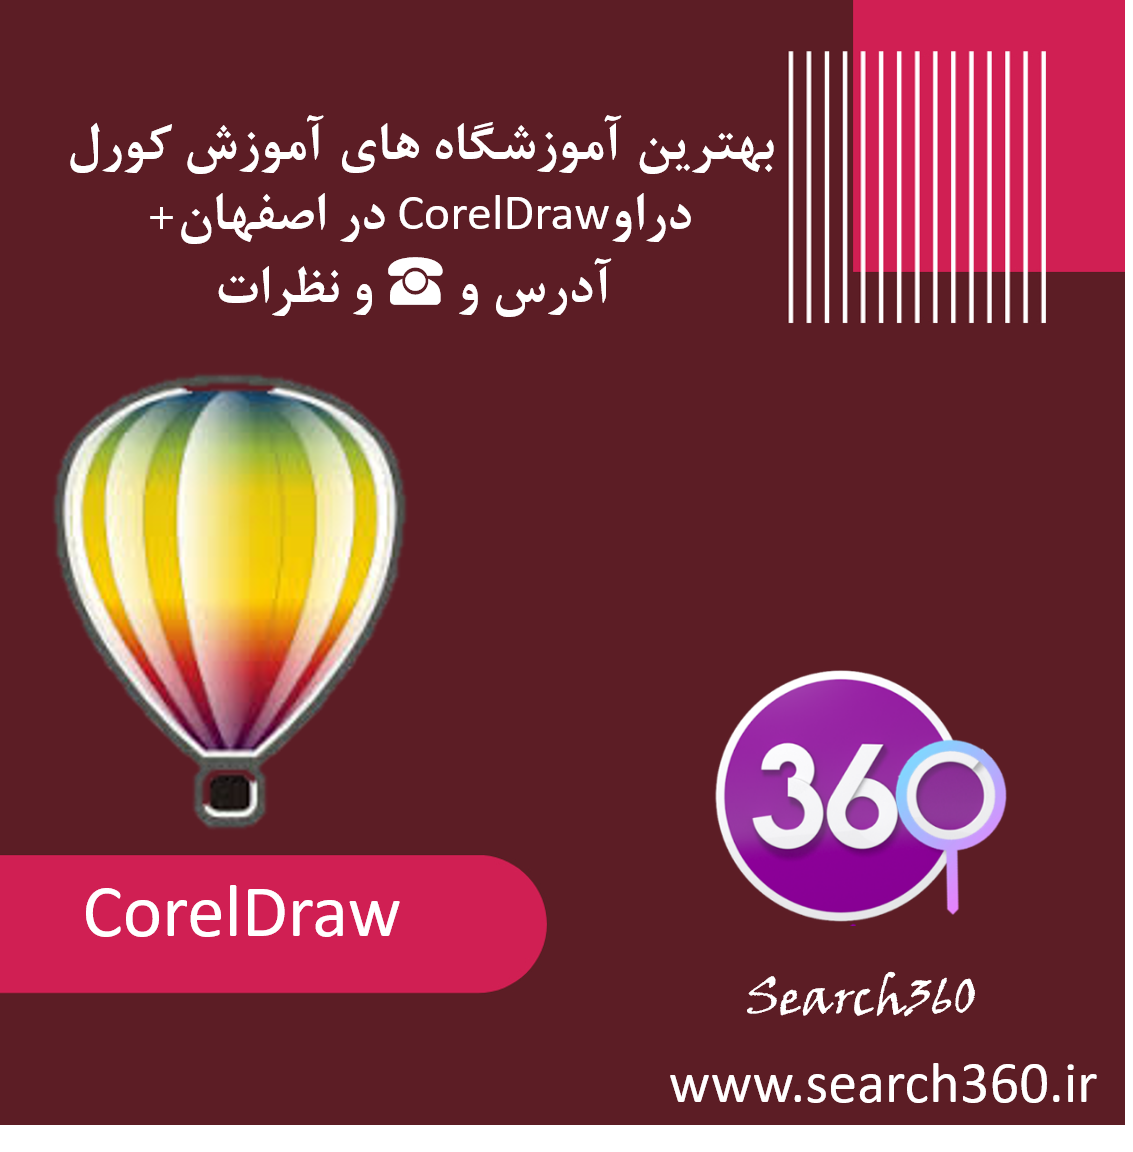 بهترین آموزشگاه های آموزش کورل دراوCorelDraw در اصفهان+ <strong> آدرس و ☎️ و نظرات</strong>